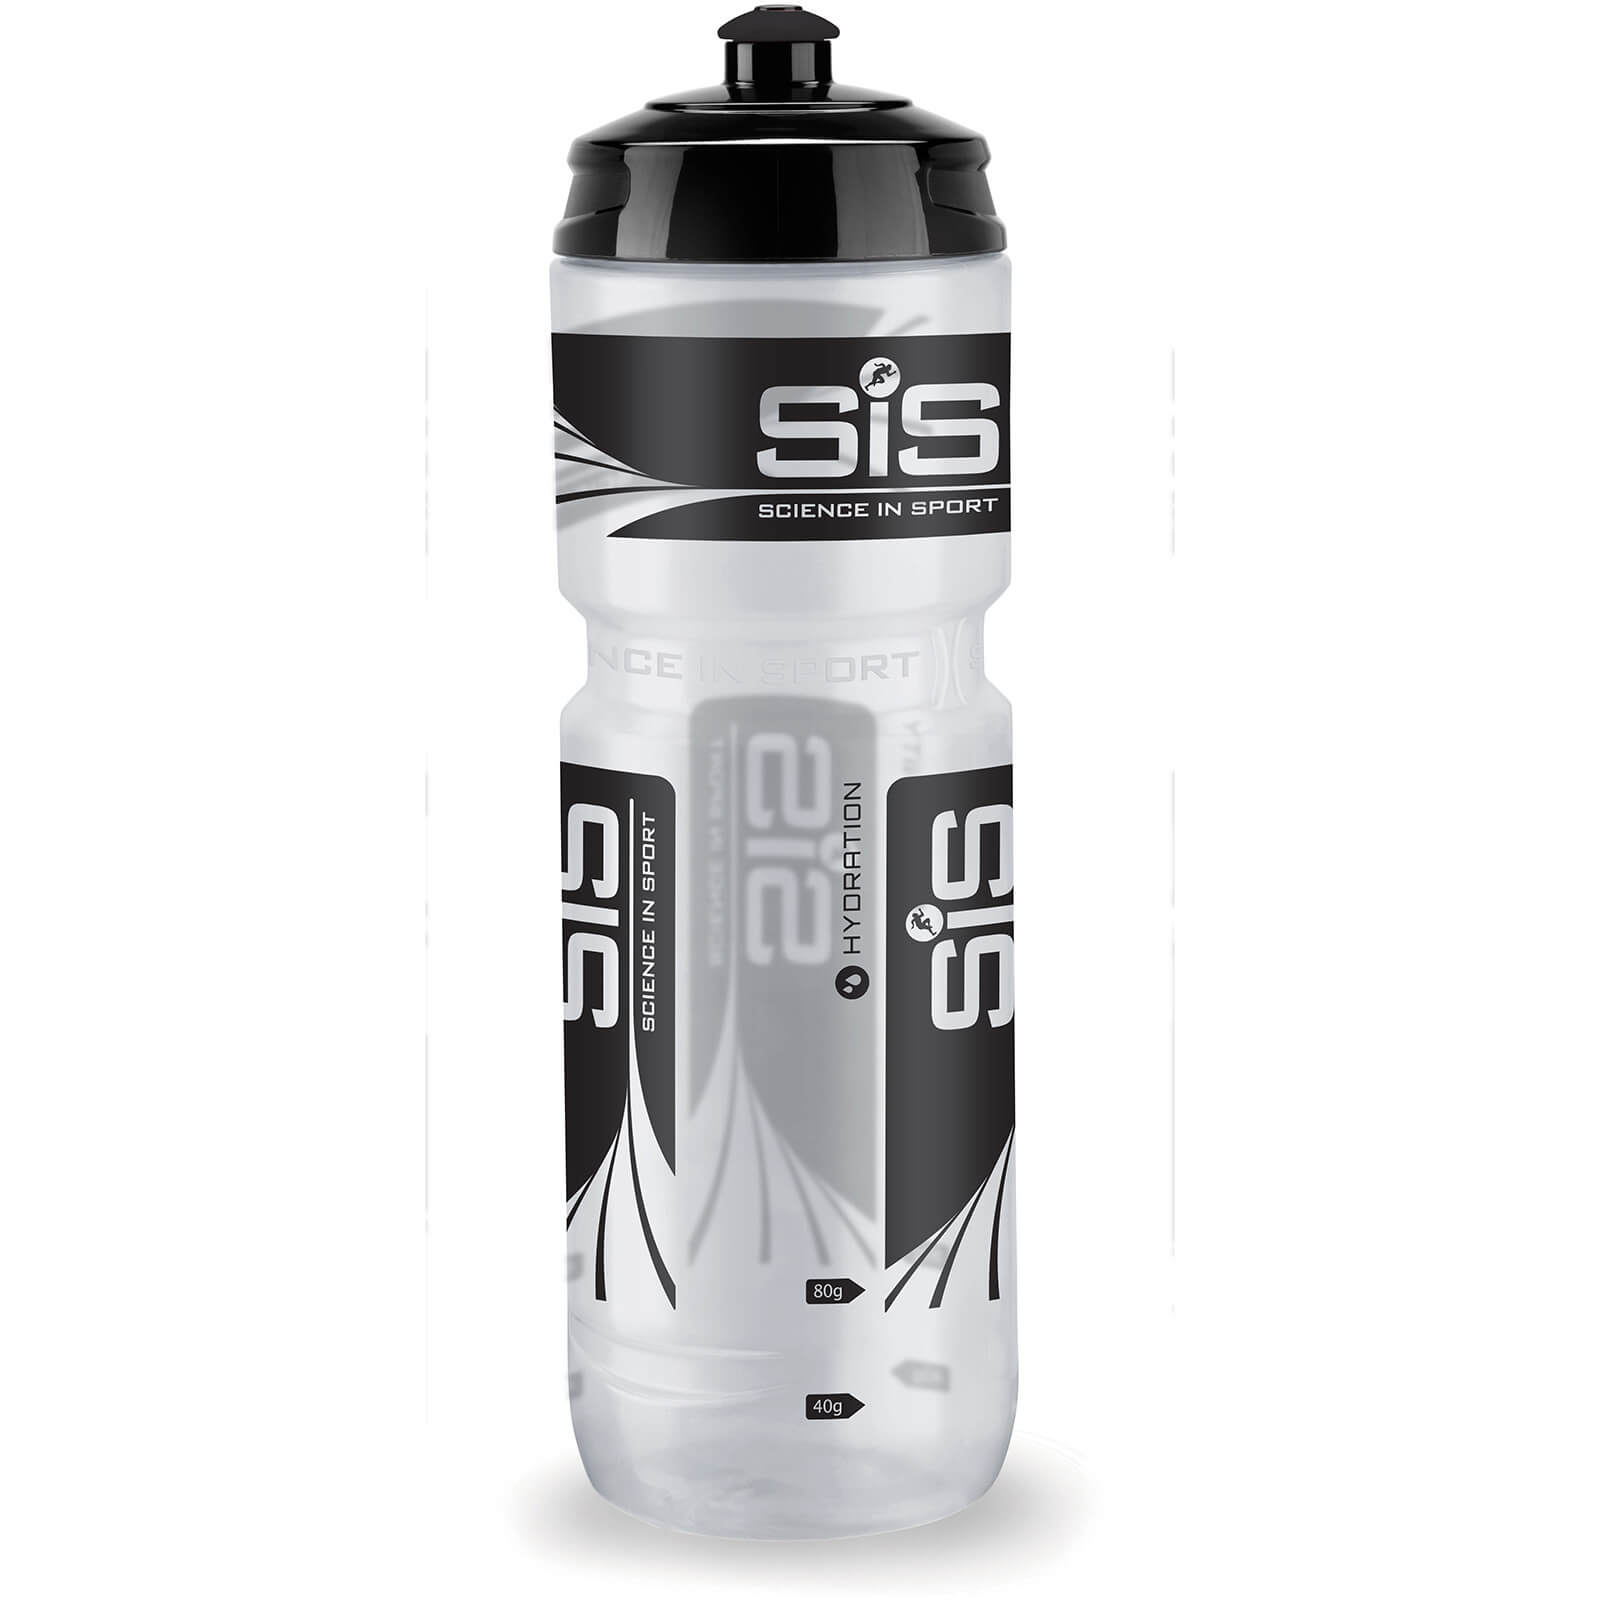 Science in Sport Water Bottle - 800ml - 800ml - Clear